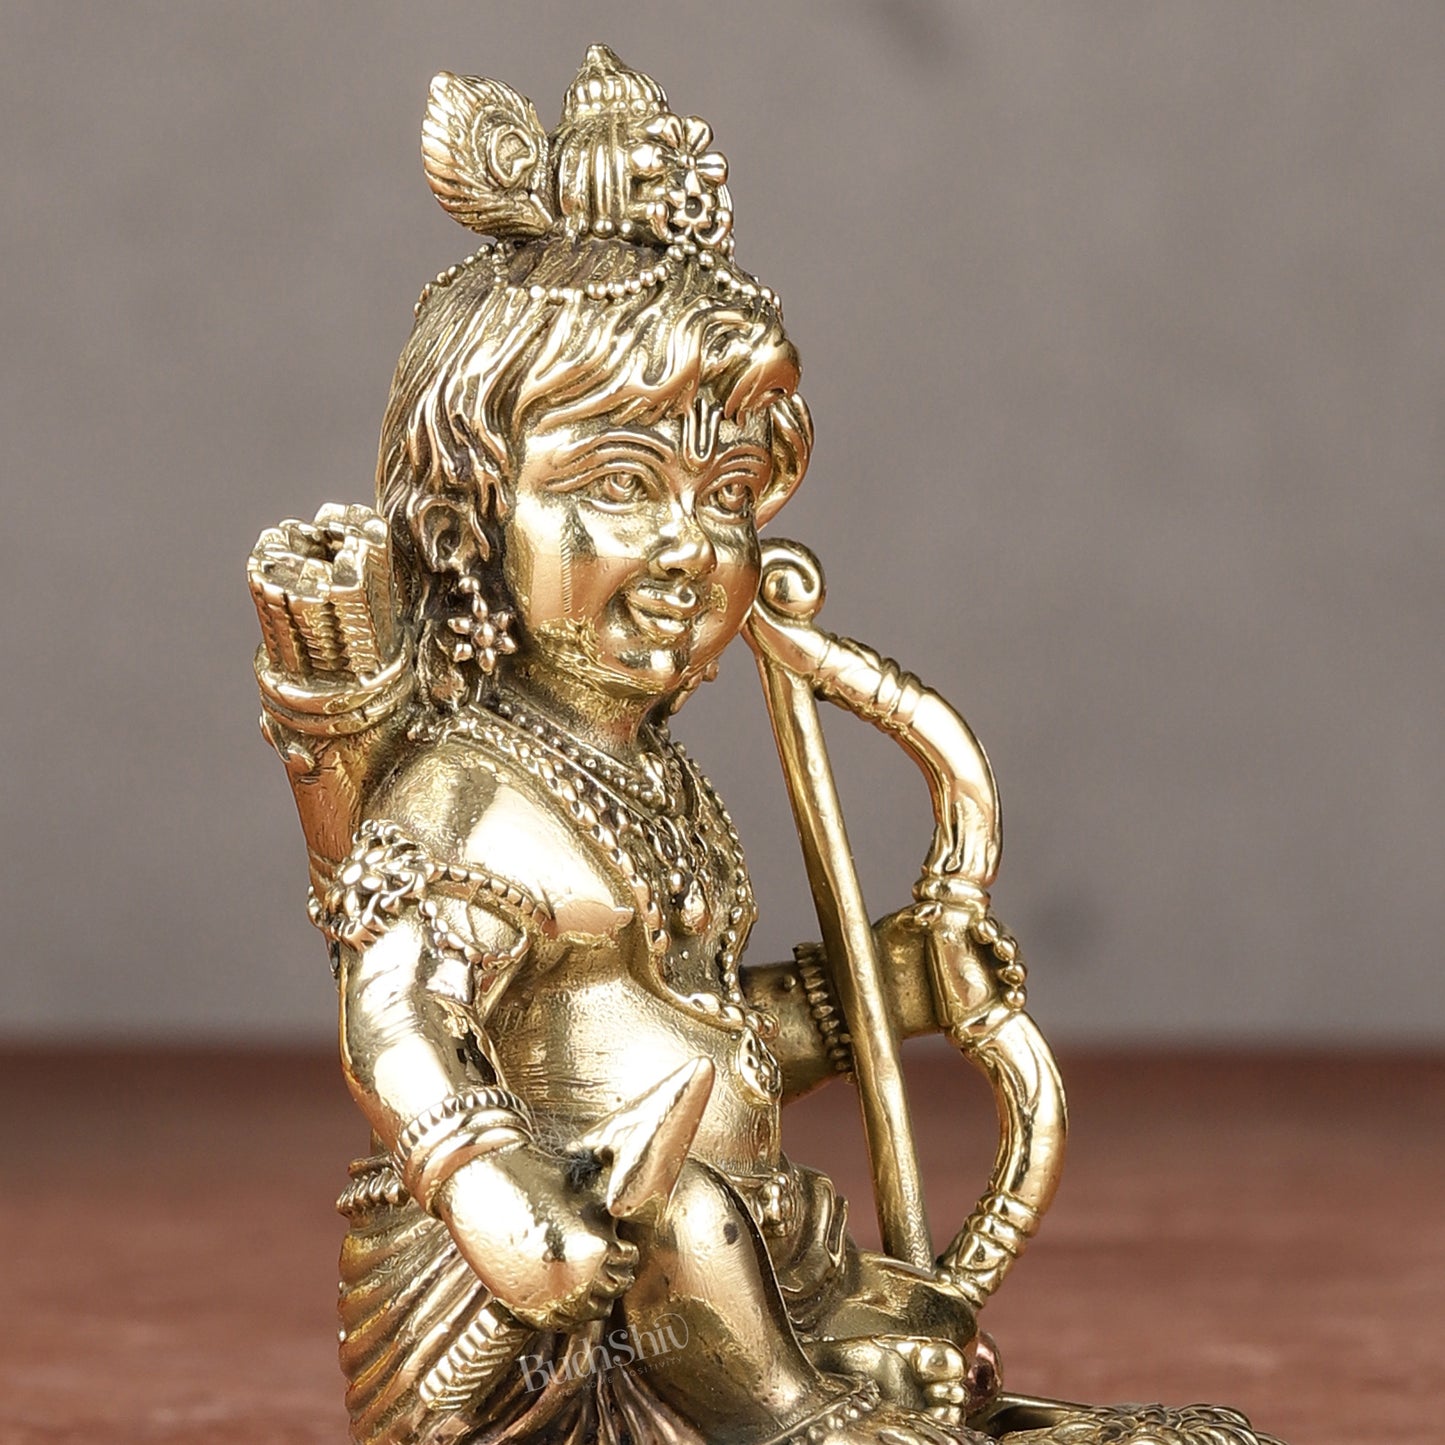 Brass Superfine Ram Lalla Idol | 3.5"